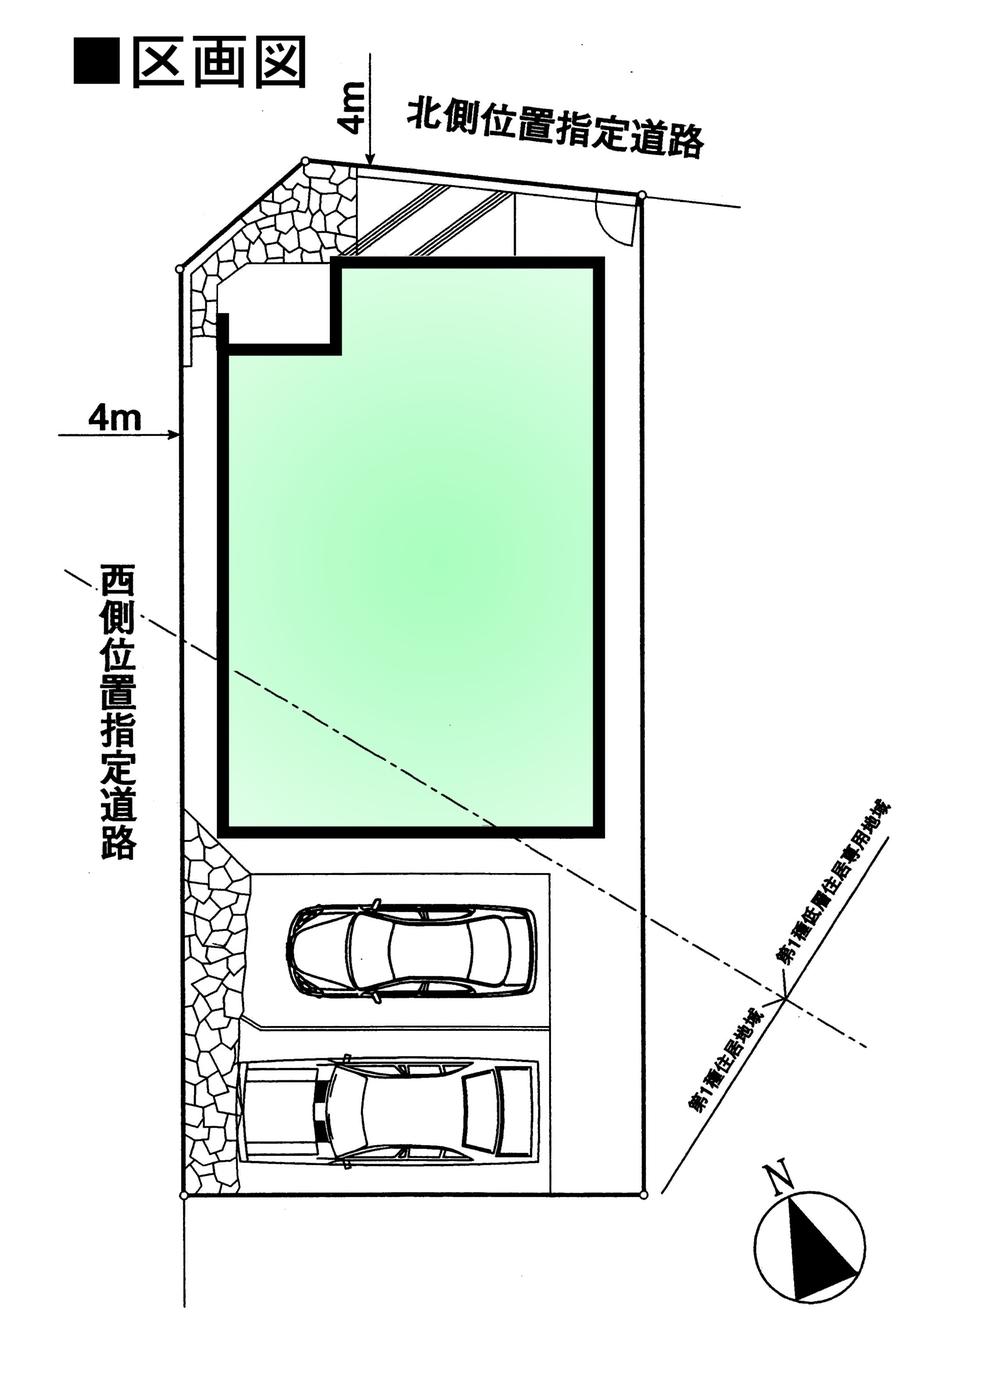 Compartment figure. 33,800,000 yen, 4LDK, Land area 113.82 sq m , Building area 95.43 sq m